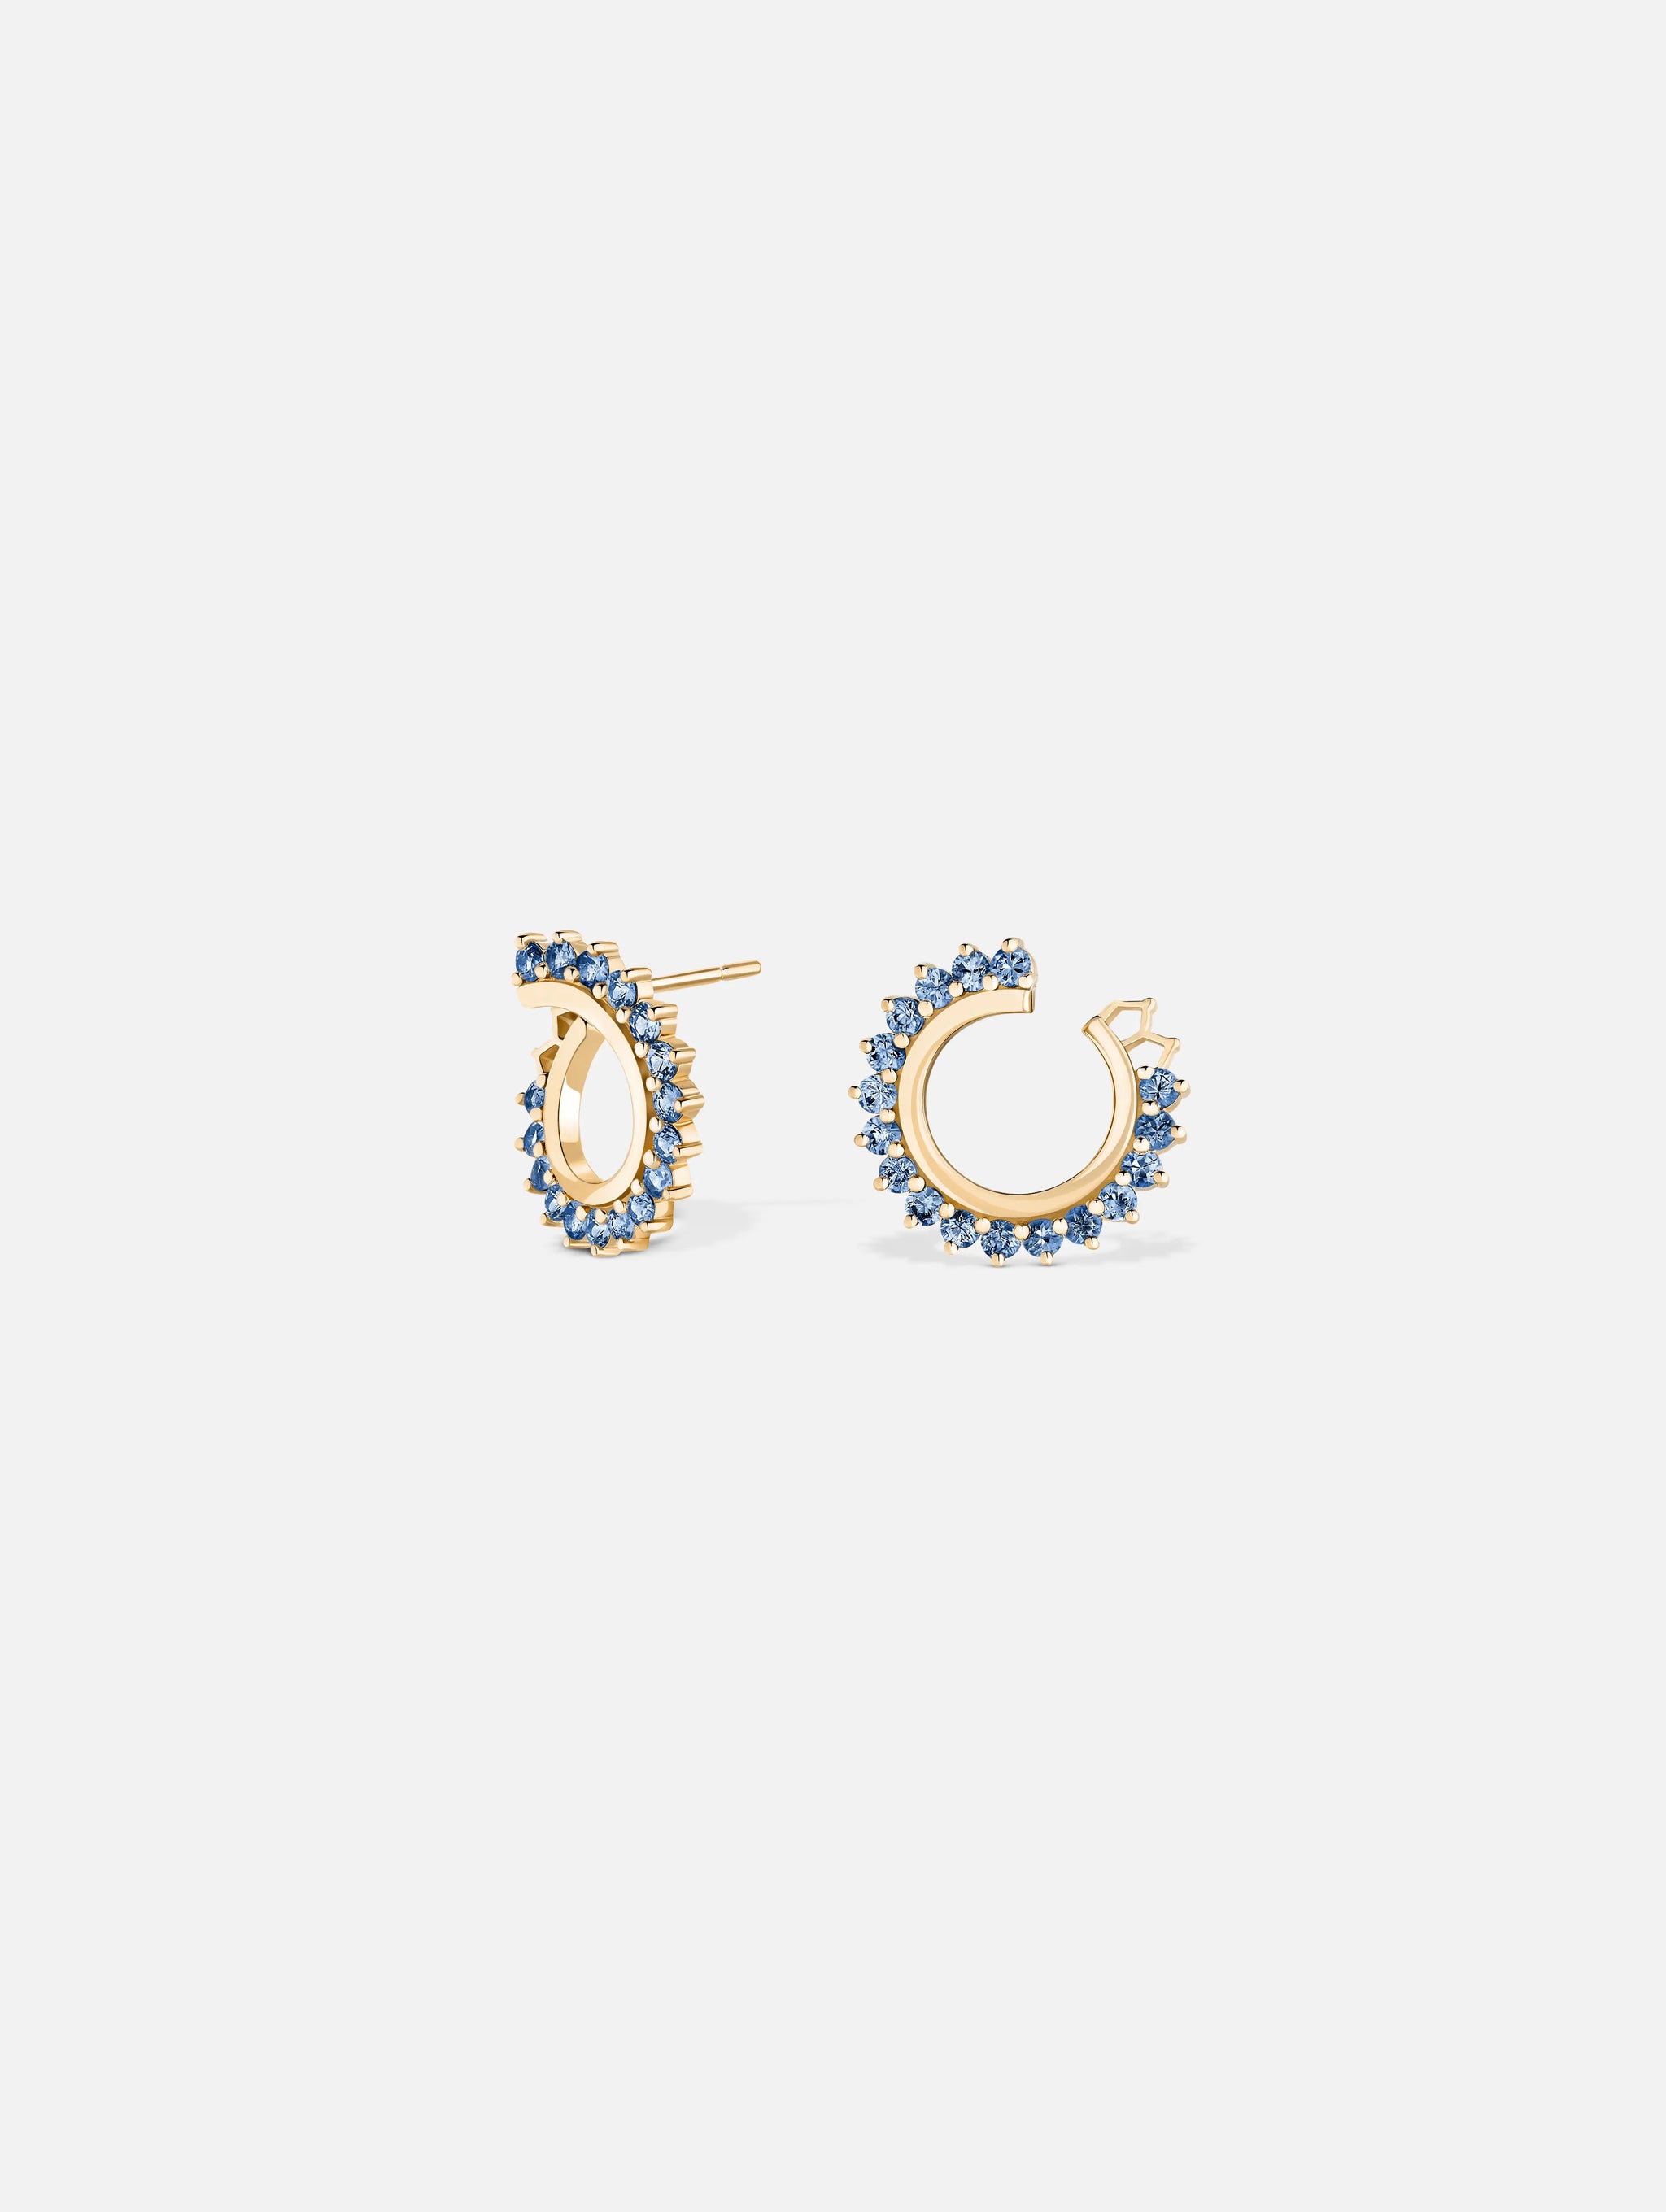 Boucles d'oreilles Vendôme Saphir Bleu en Or Jaune - 1 - Nouvel Heritage